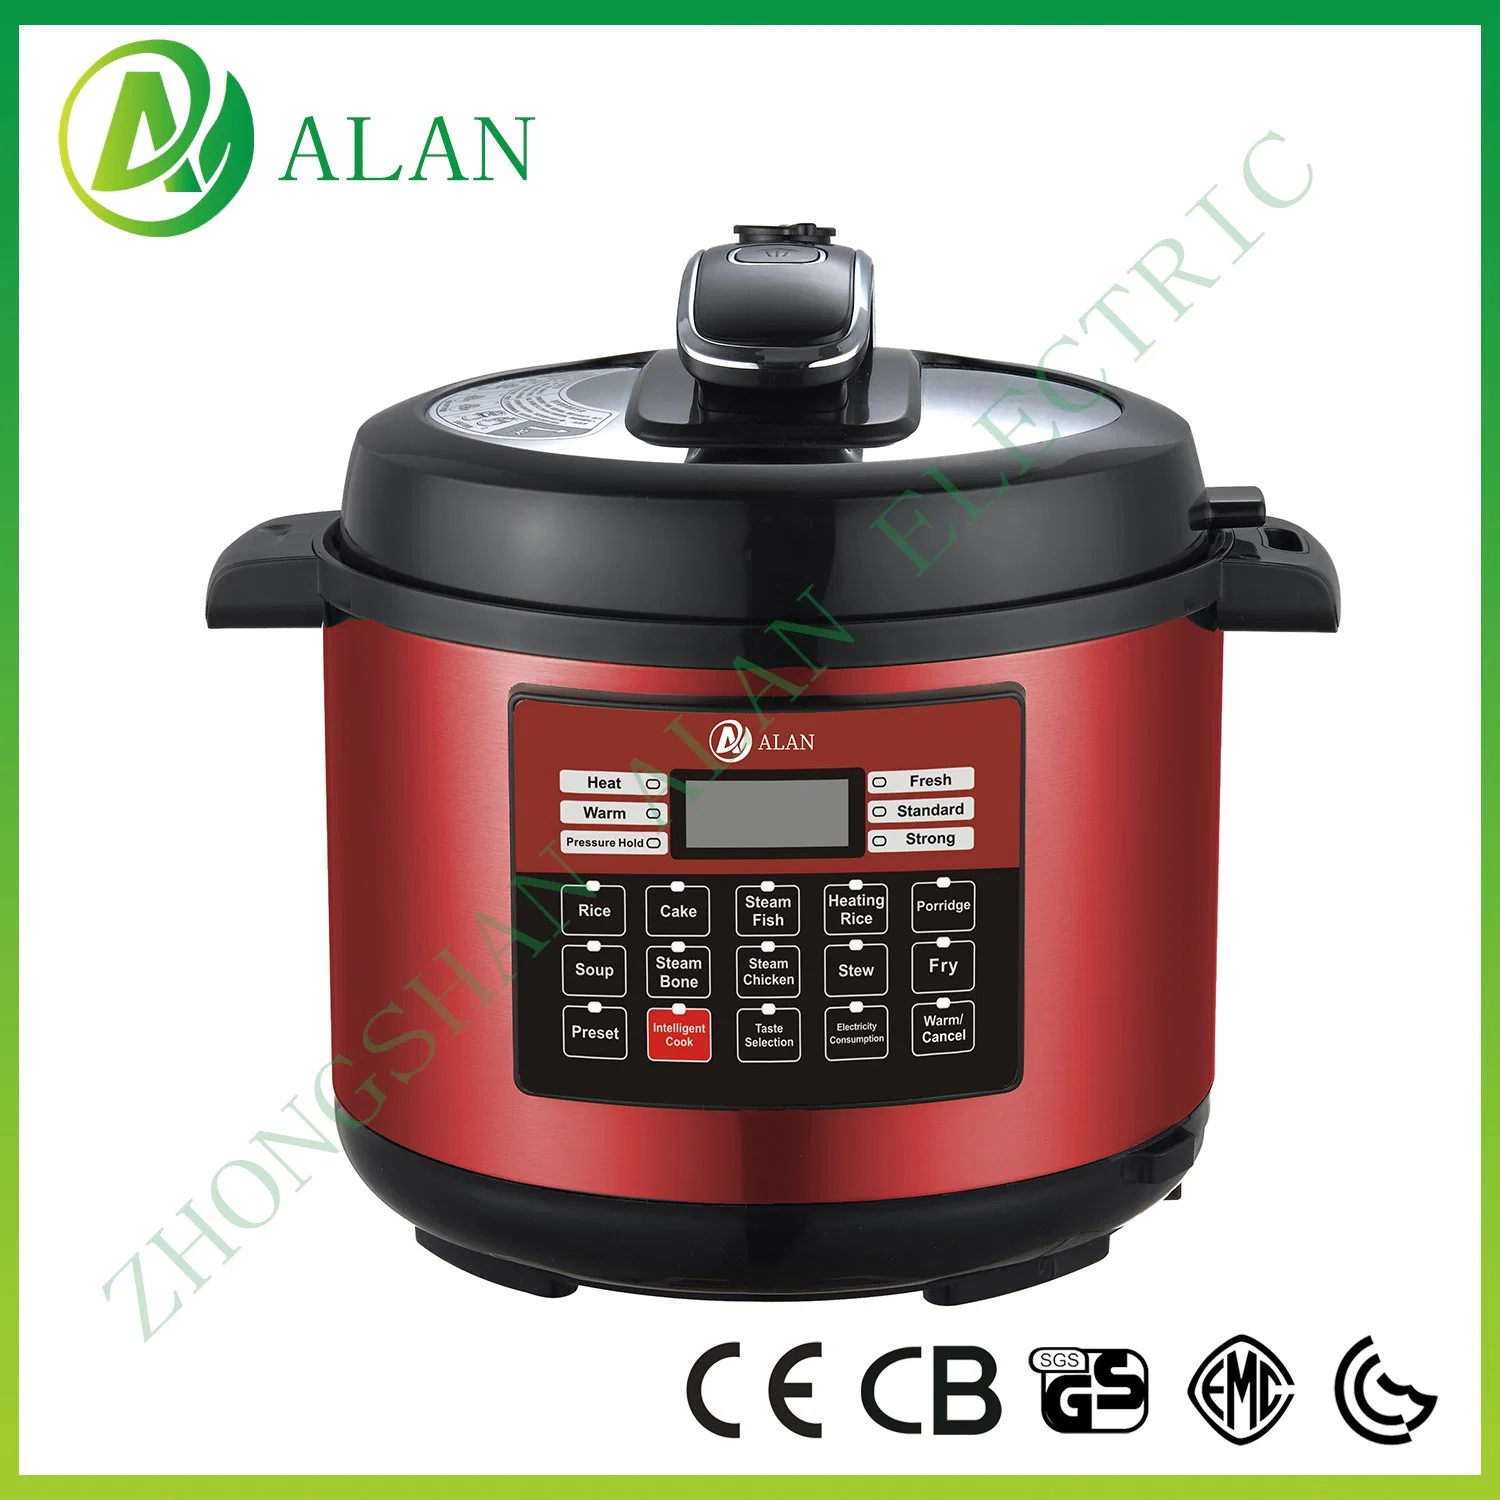 BEST Seller 6qt multifonction pression électrique riz Cooker 220V avec Panneau de commande tactile IMD